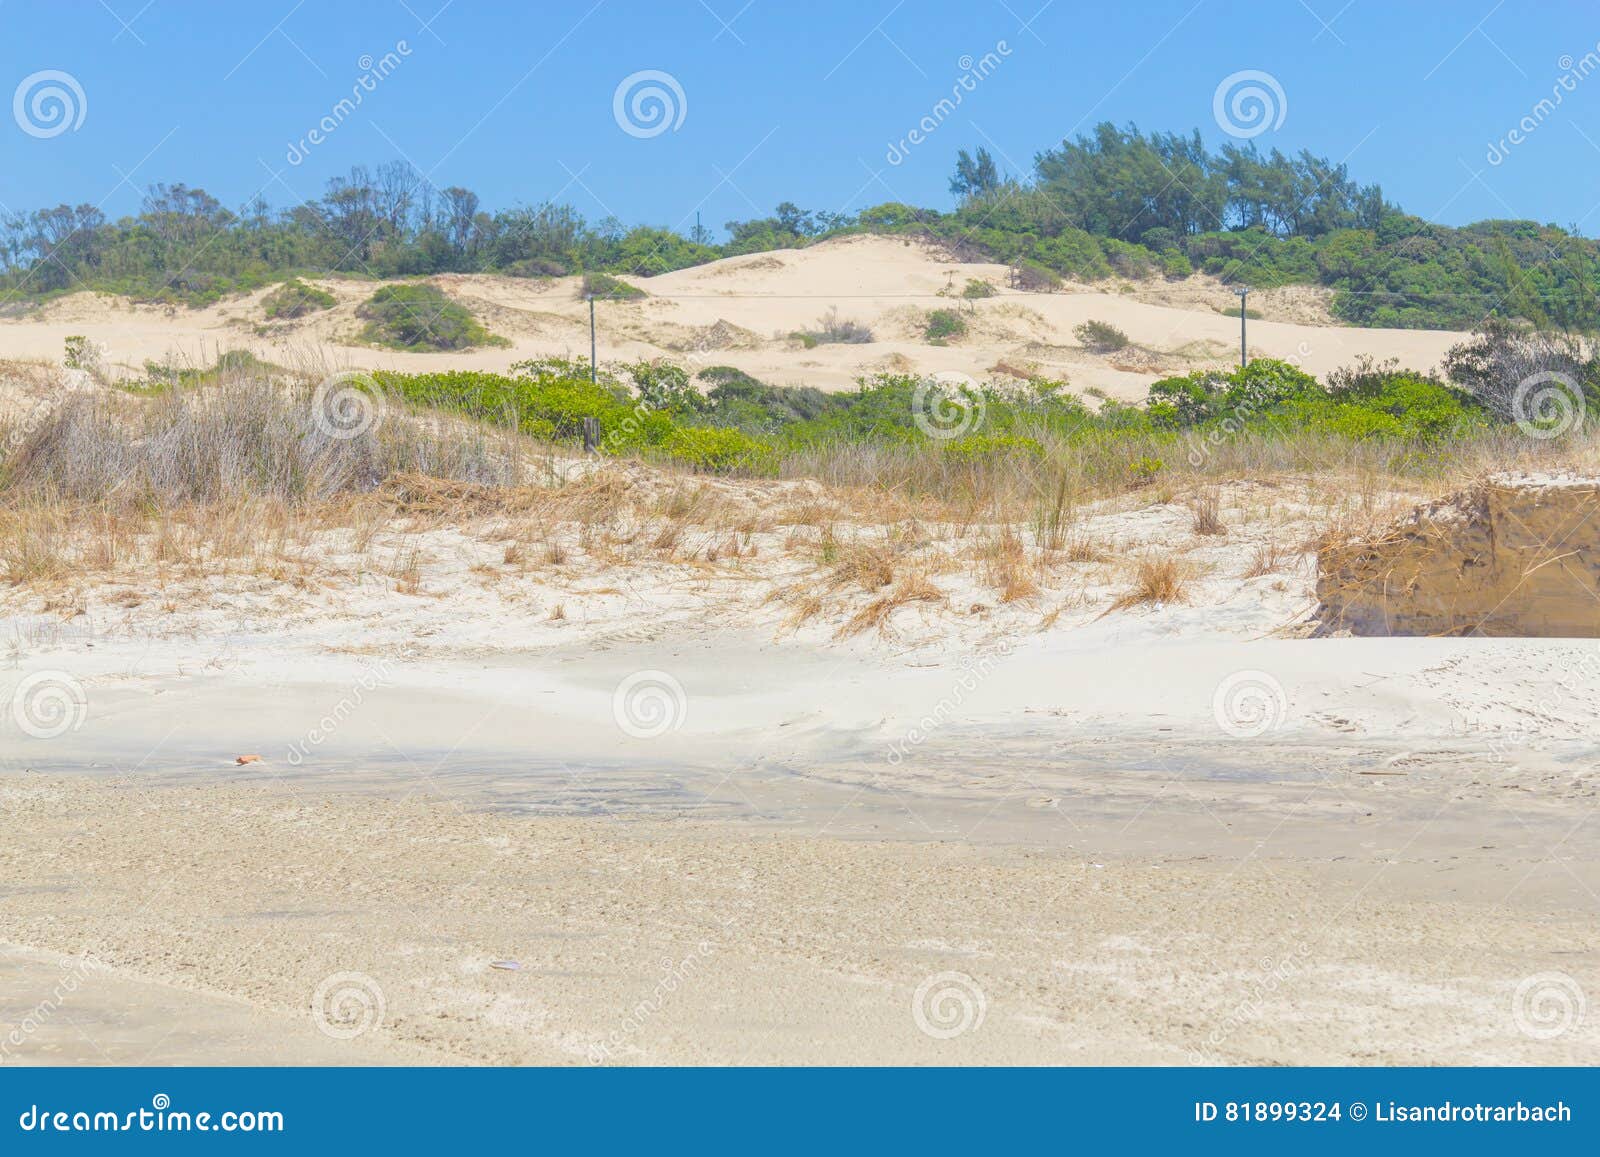 Végétation au-dessus des dunes au parc d'Itapeva en plage de Torres. Végétation au-dessus des dunes dans un jour ensoleillé chez Torres, Rio Grande do Sul